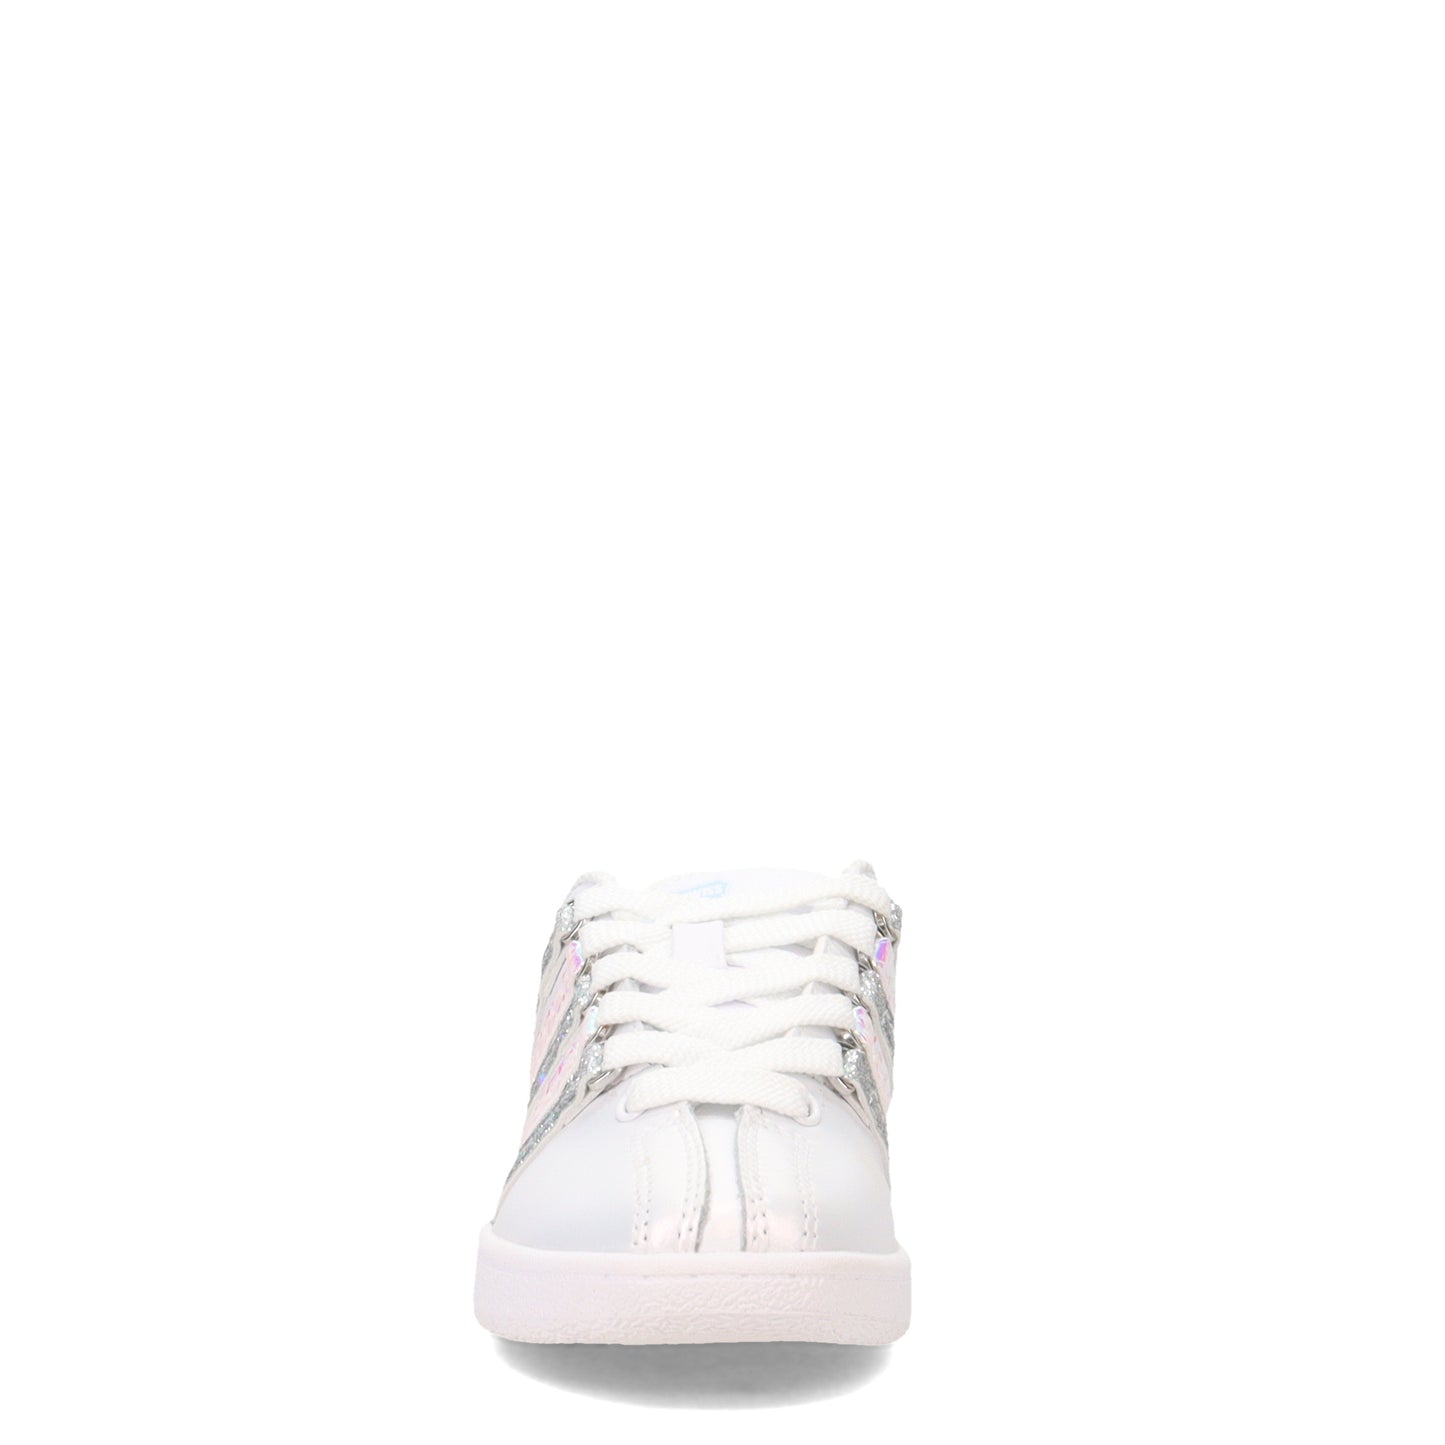 Peltz Shoes  Girl's K-Swiss Classic VN Sneaker - Little Kid WHITE 57321-968